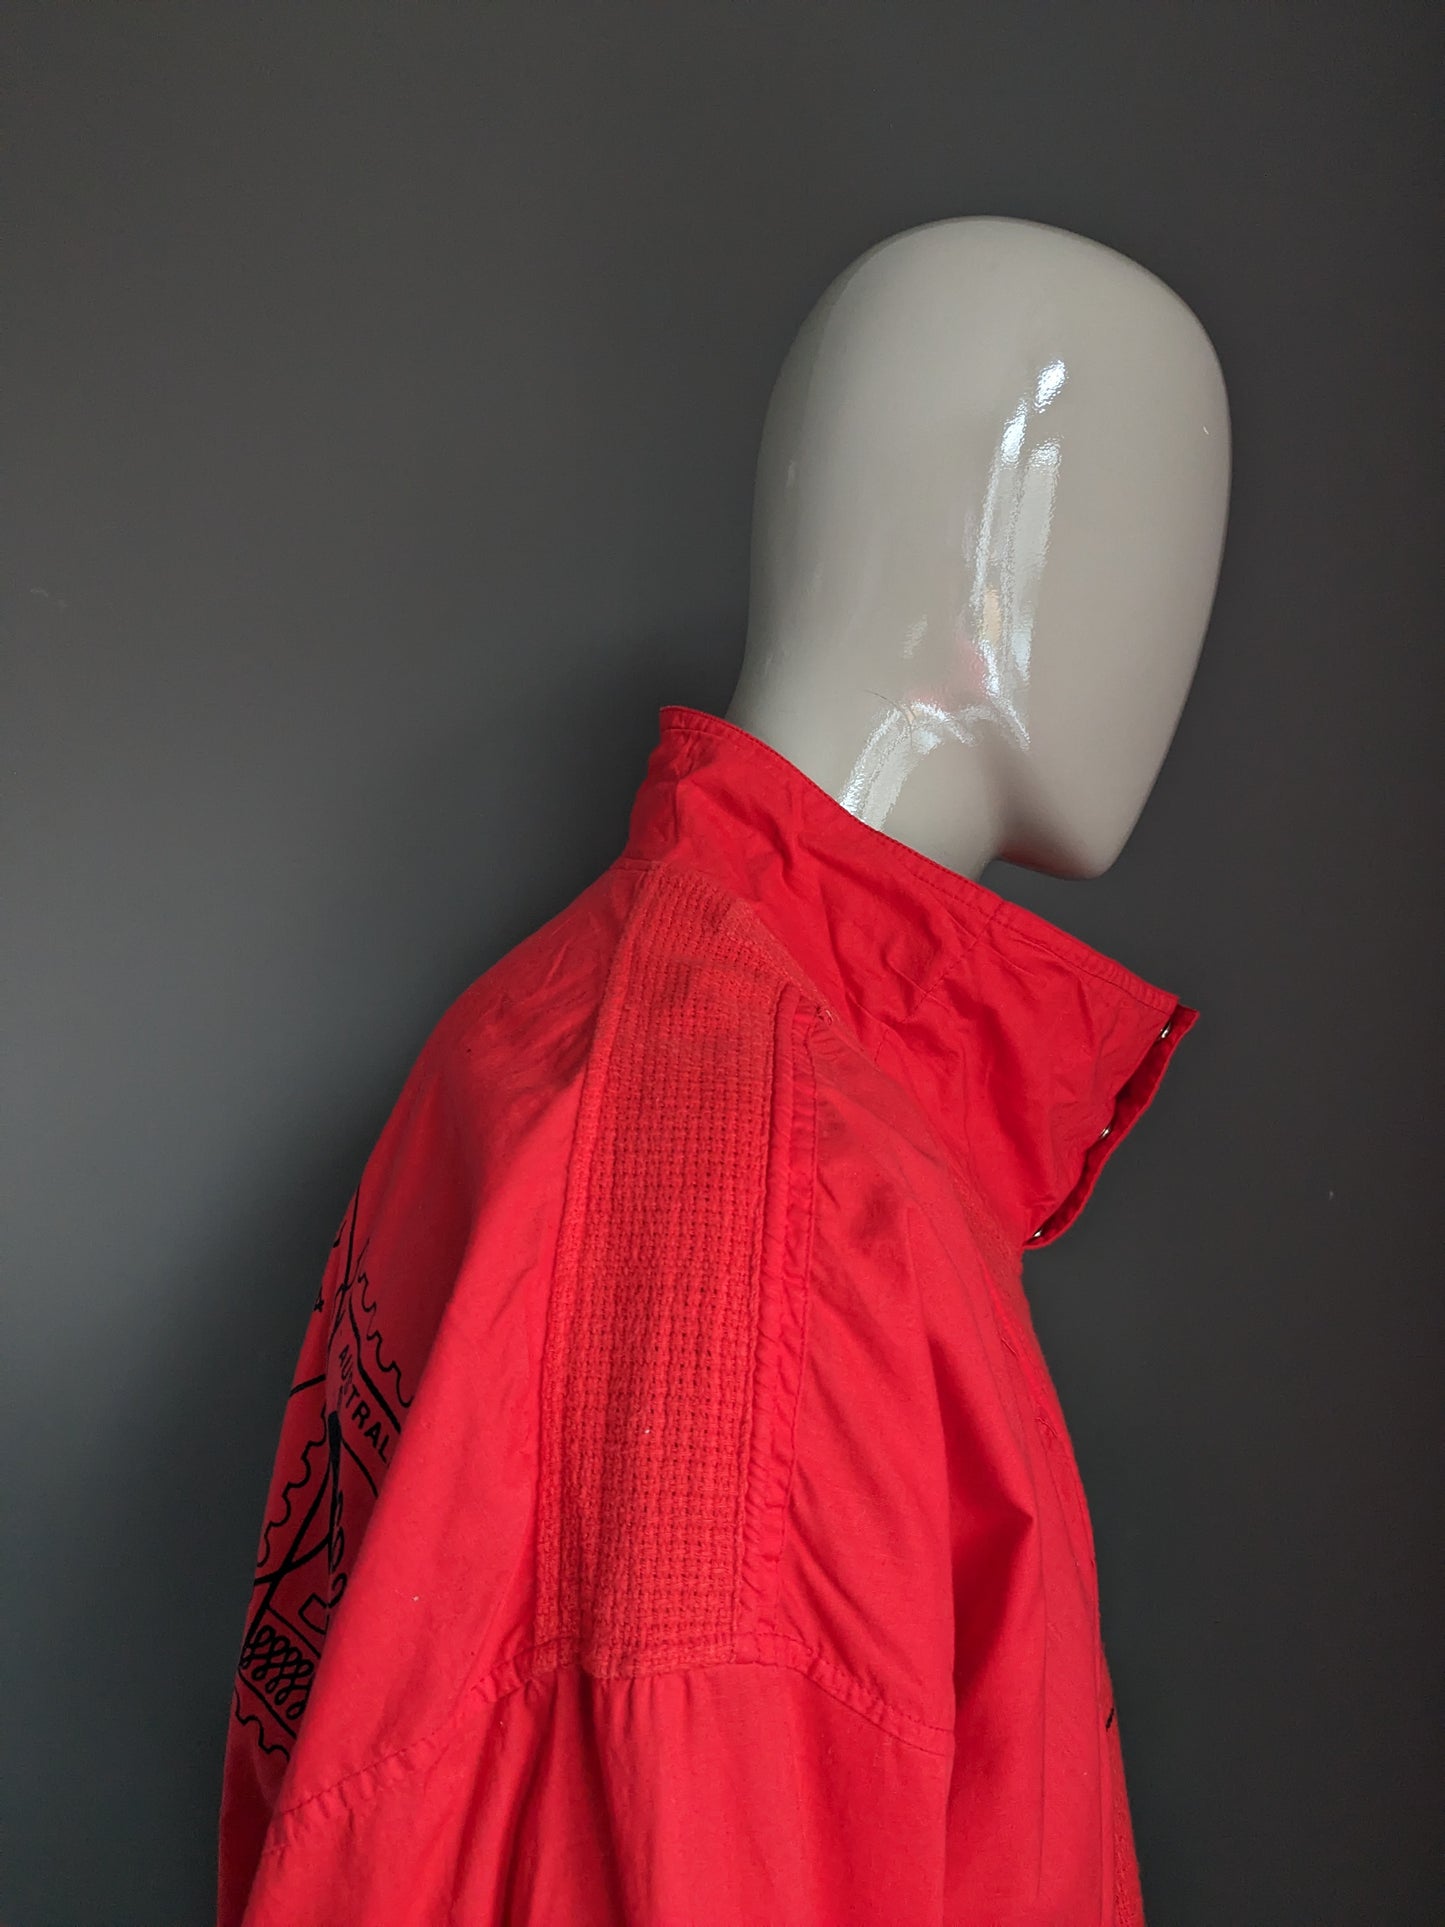 Maglione in polo vintage con fascia elastica. Rosso con stampa. Taglia L / XL.